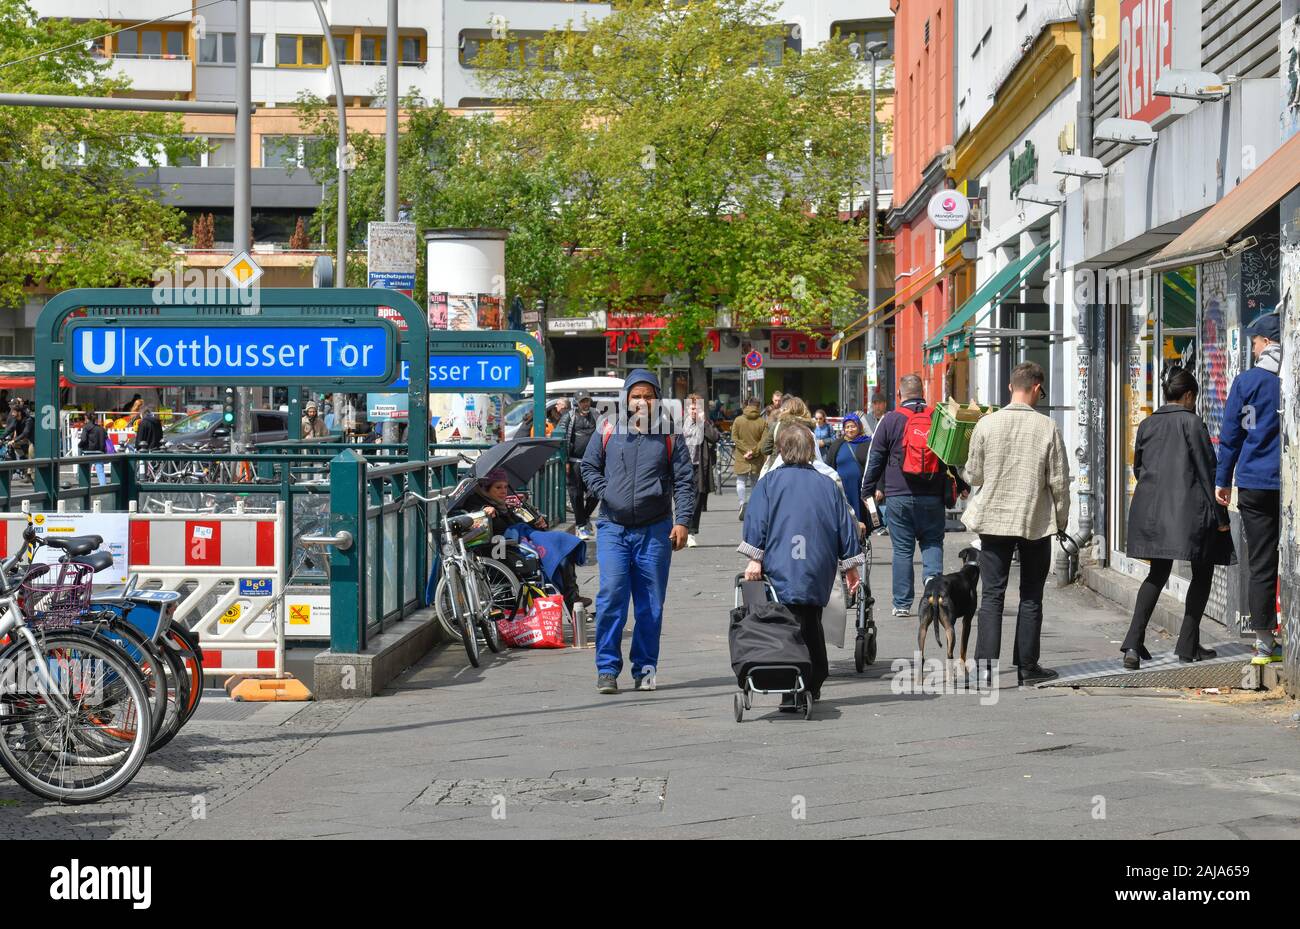 Straßenszene, Kottbusser Tor, Kreuzberg, Berlin, Deutschland Stock Photo